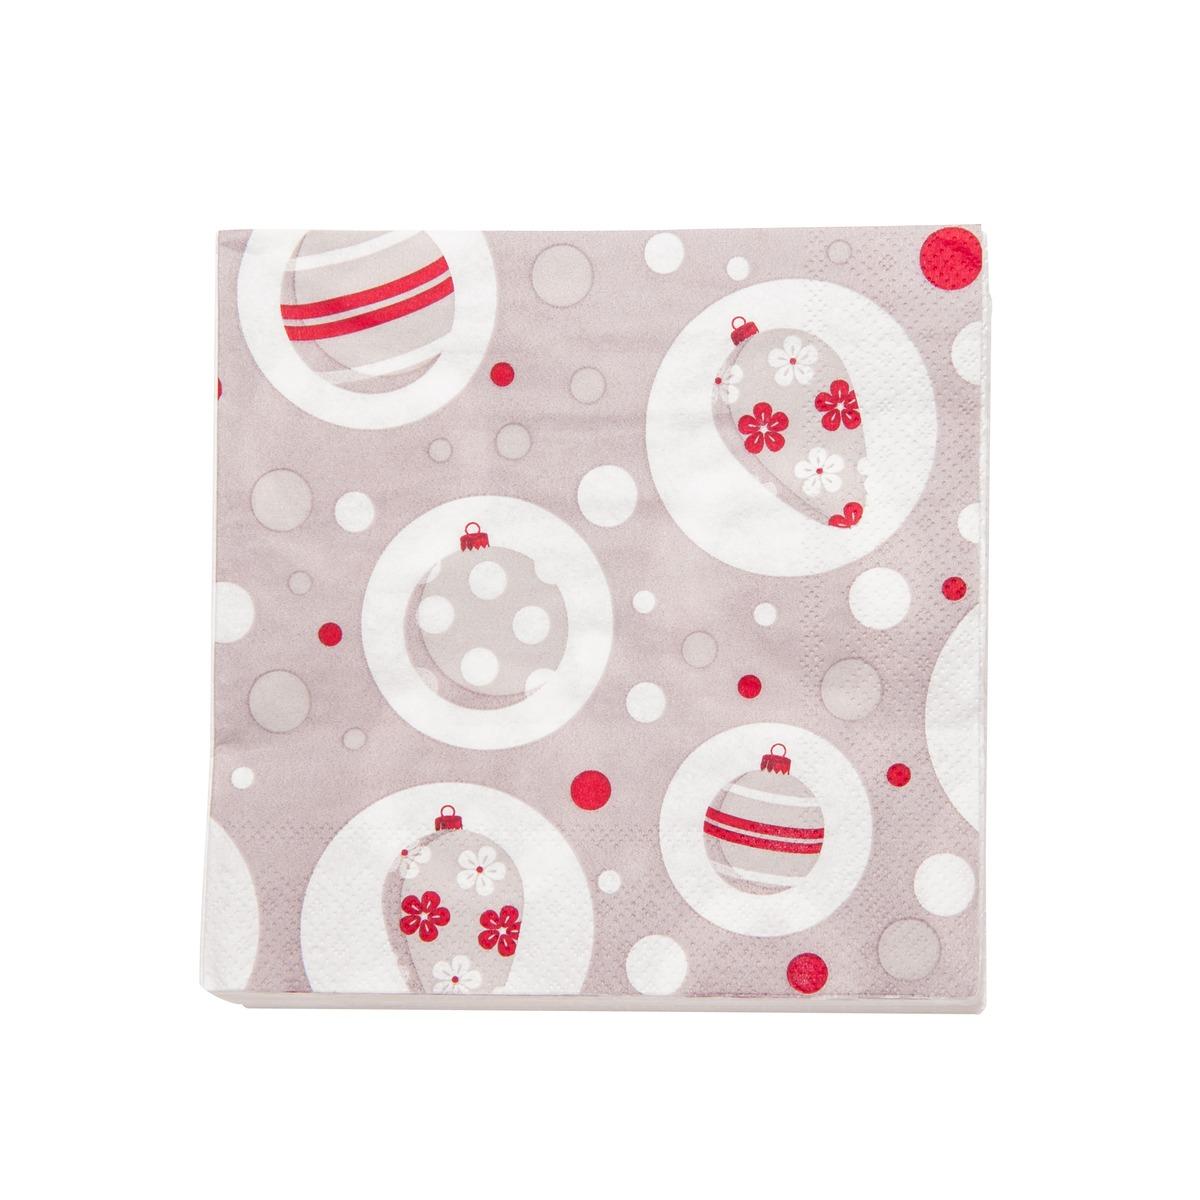 Lot de 20 serviettes en papier motif boules de Noël - 33 x 33 cm - Blanc, Rouge, Gris